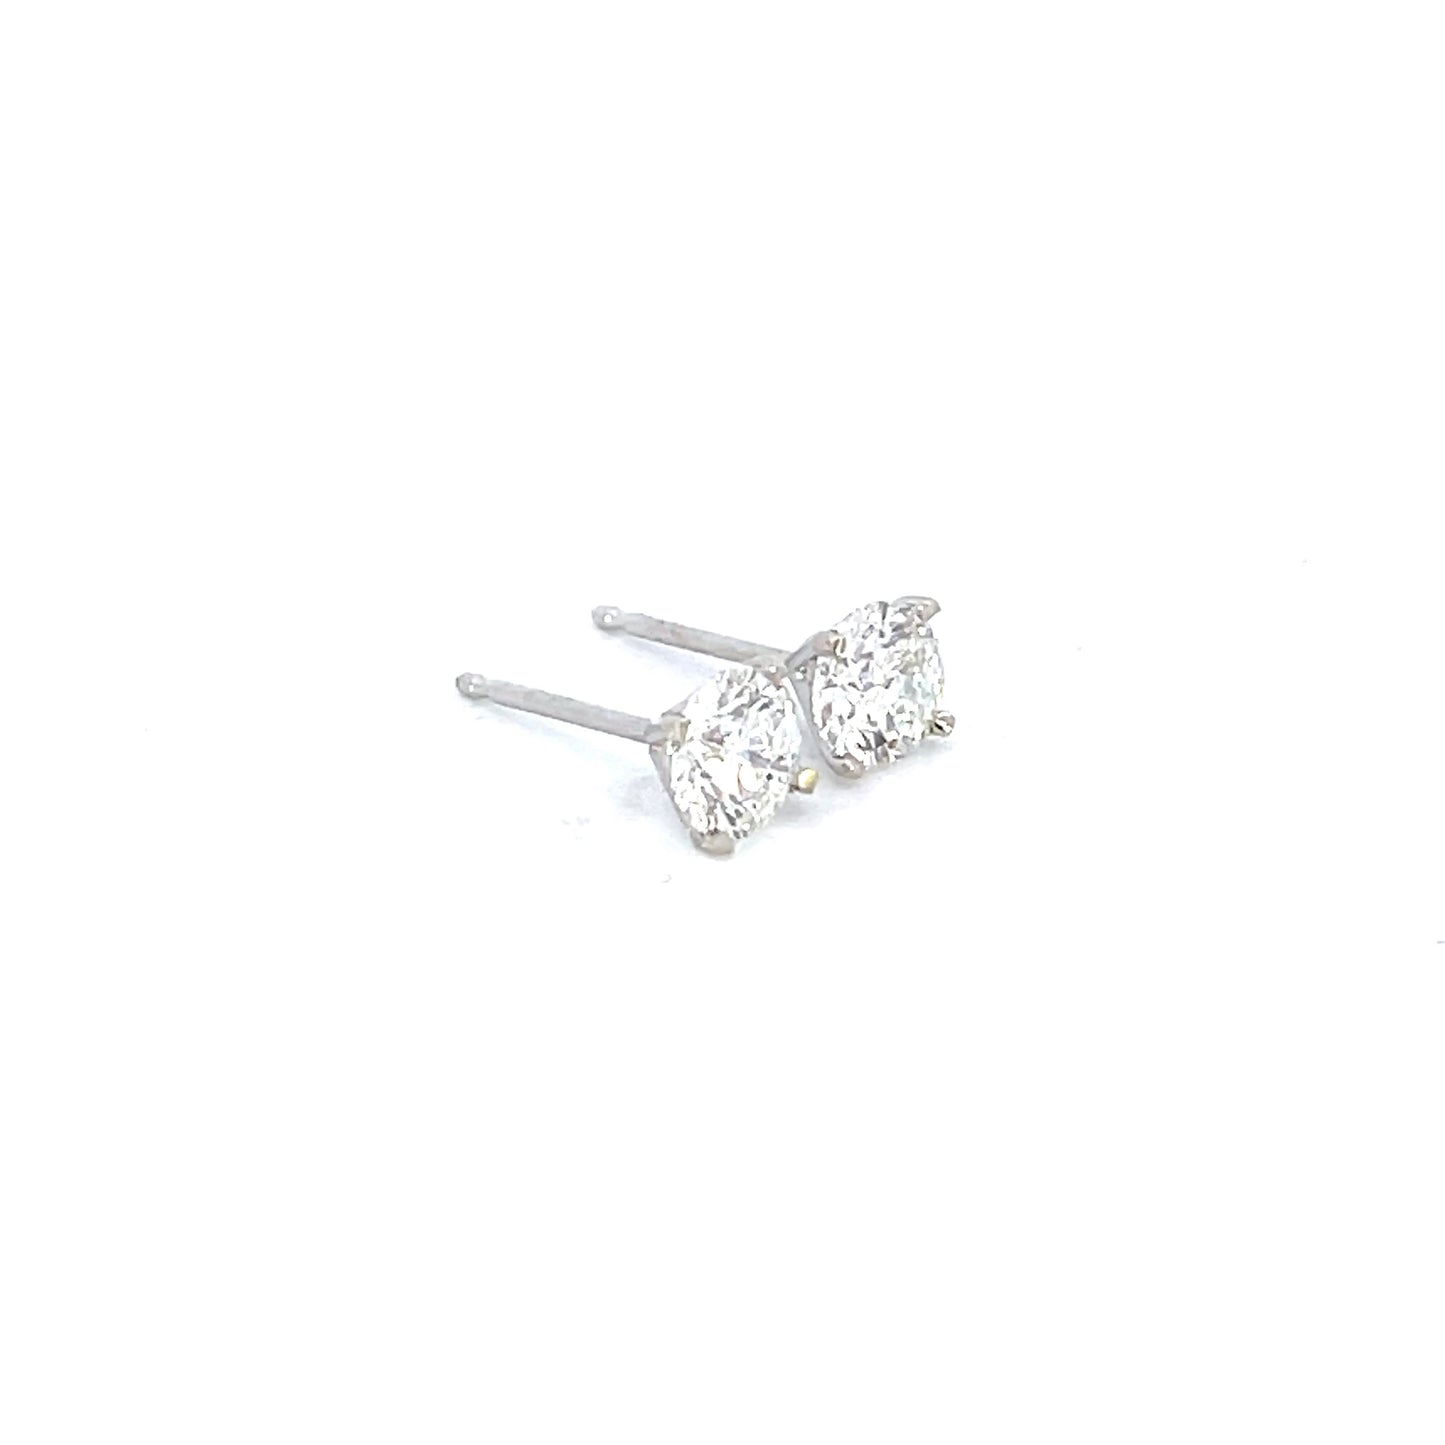 14kt white gold diamond stud earrings, 1 ct TW